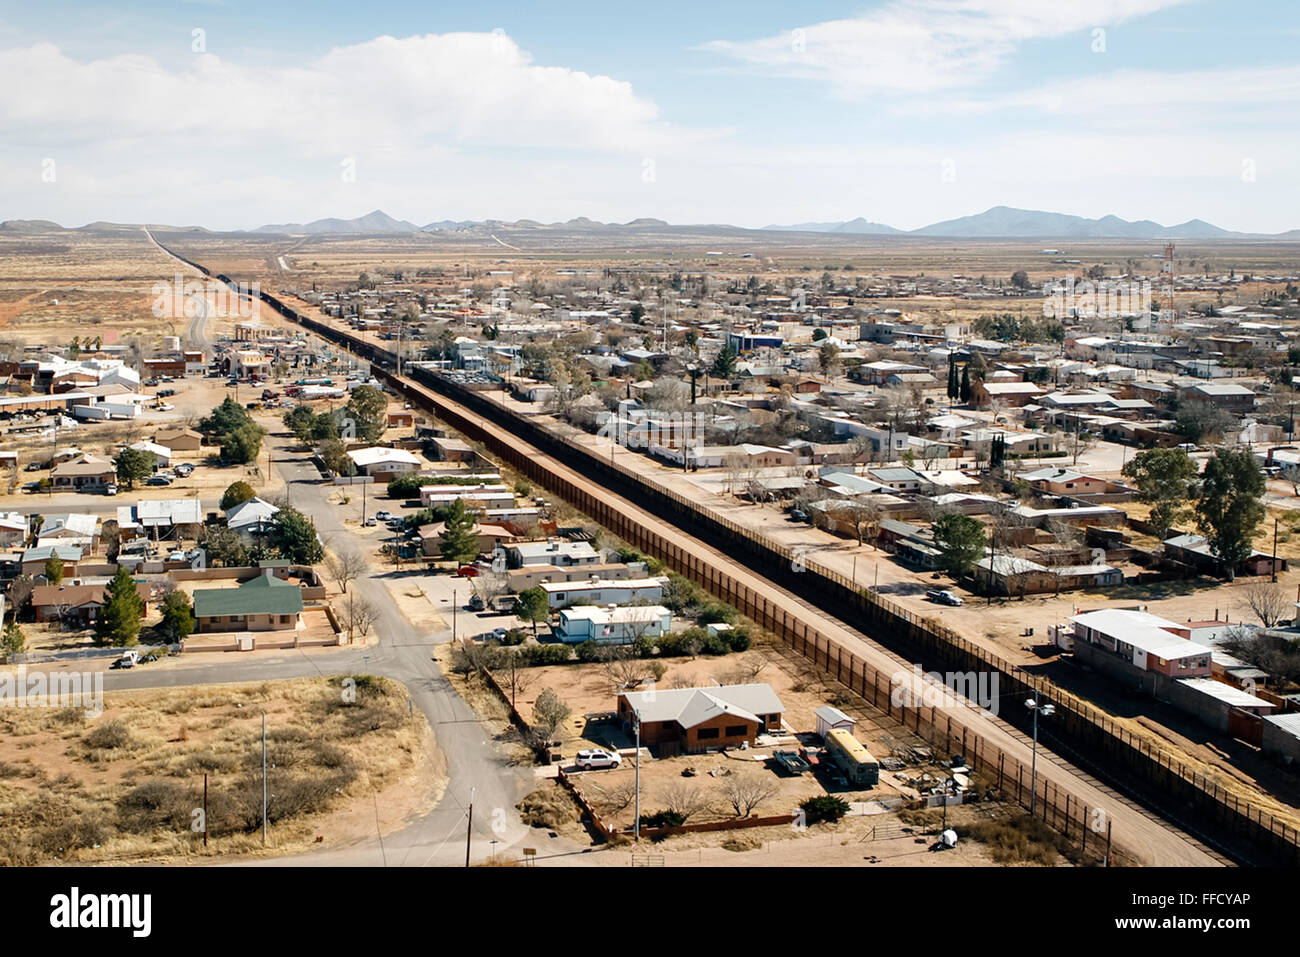 Luftaufnahme des Zauns US-mexikanischen Grenze in Arizona. Siehe Beschreibung für mehr Informationen. Stockfoto